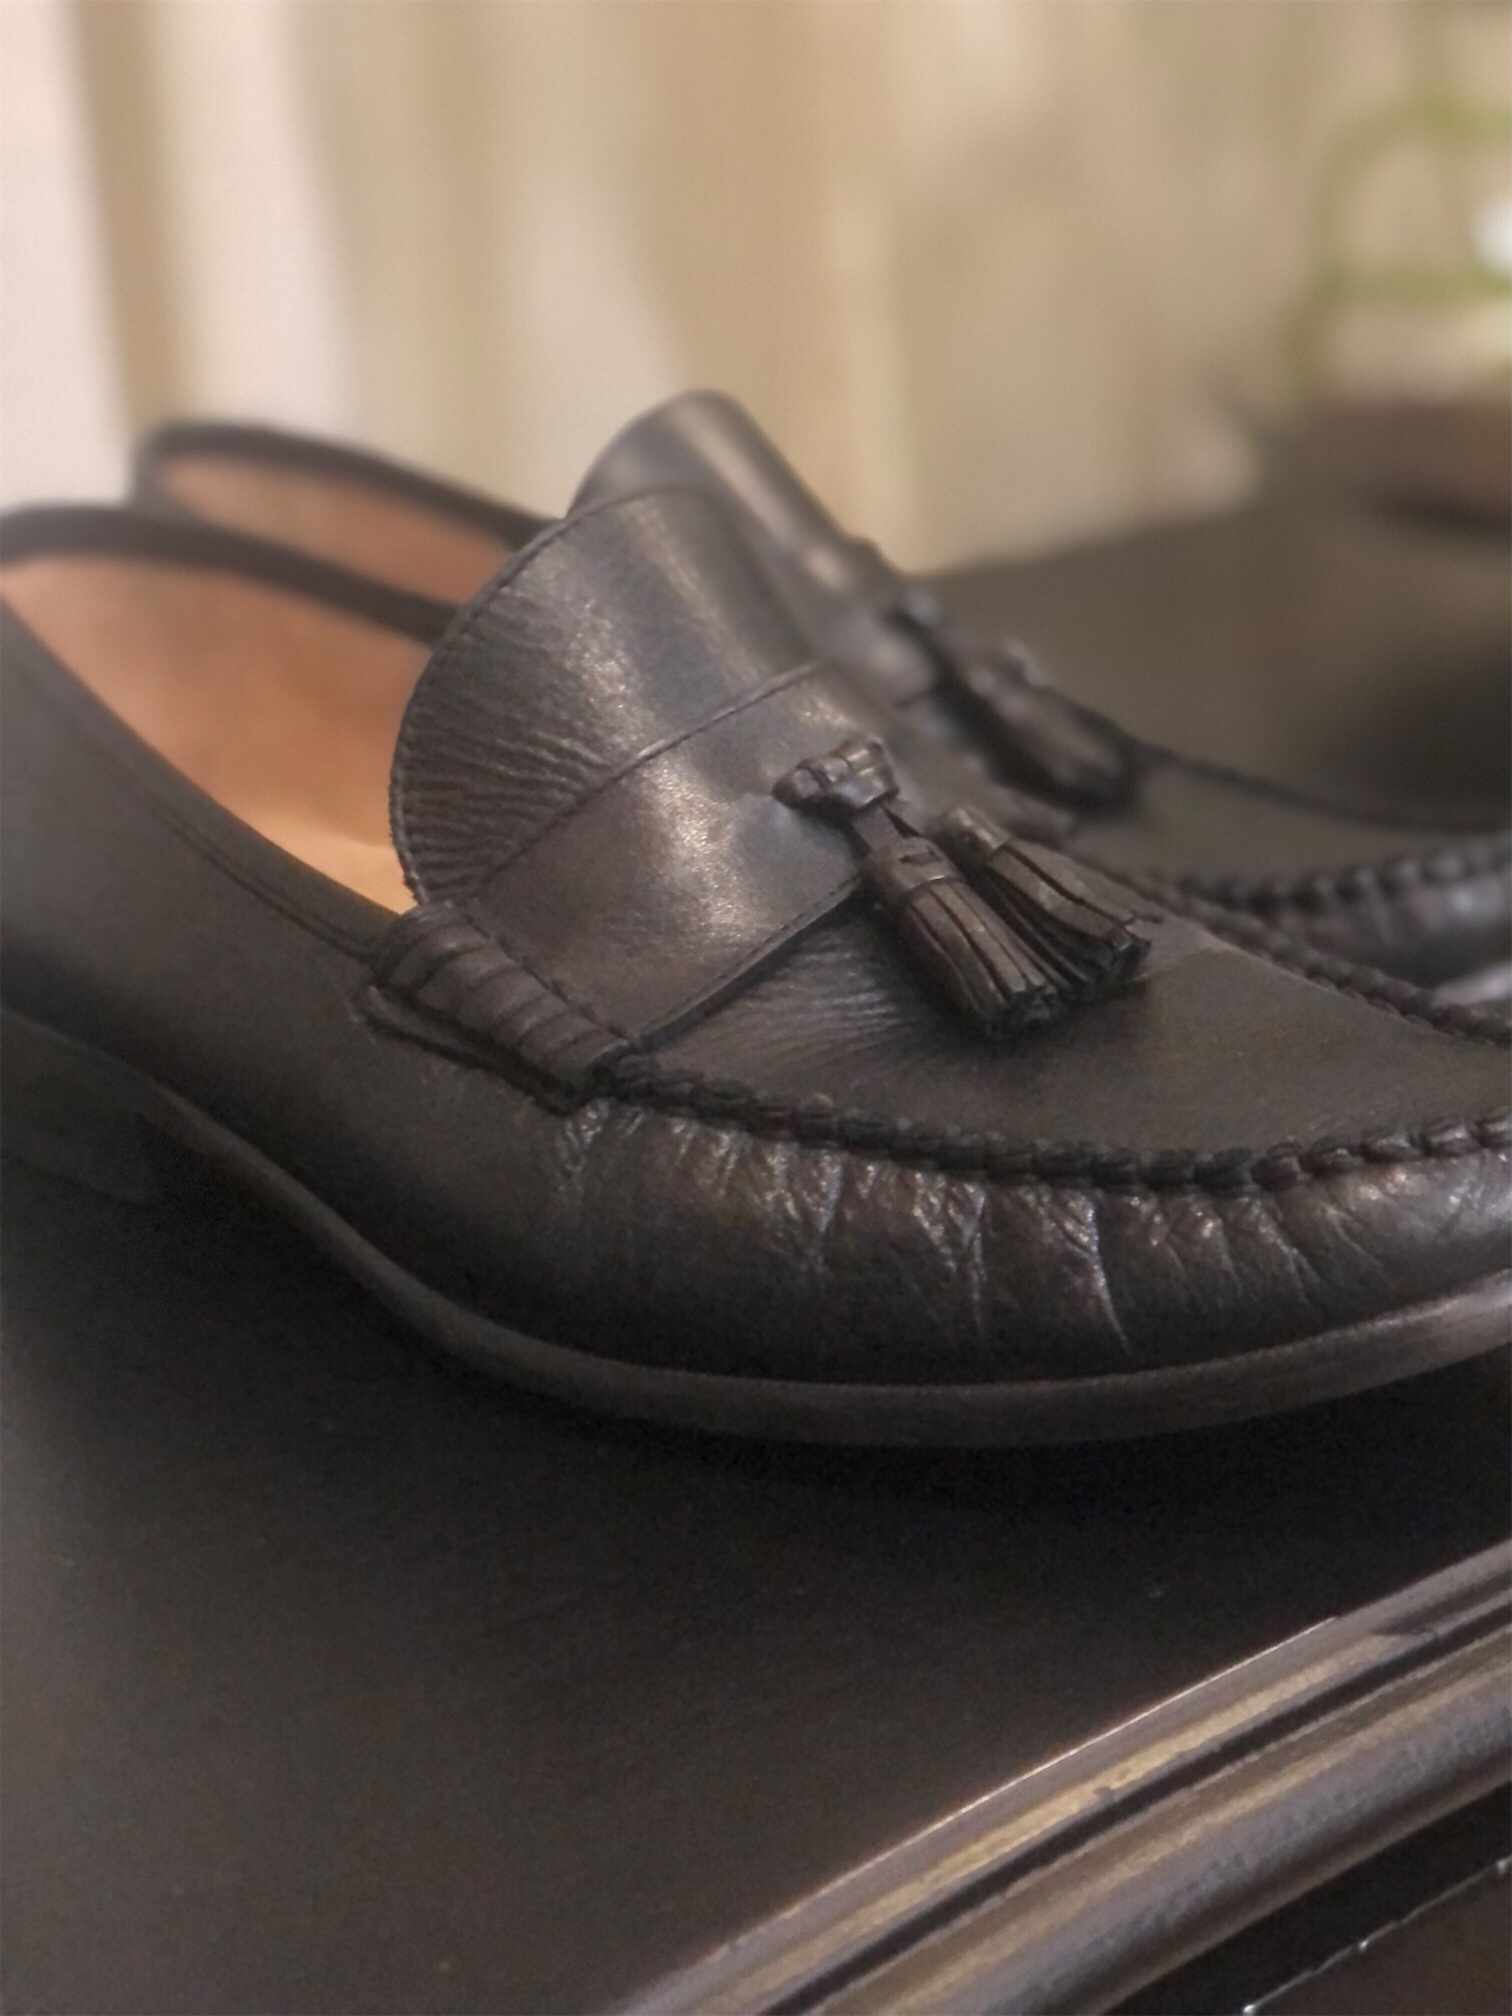 zapatos para hombre - Zapatos Florsheim en cuero negro, size 10D, originales.